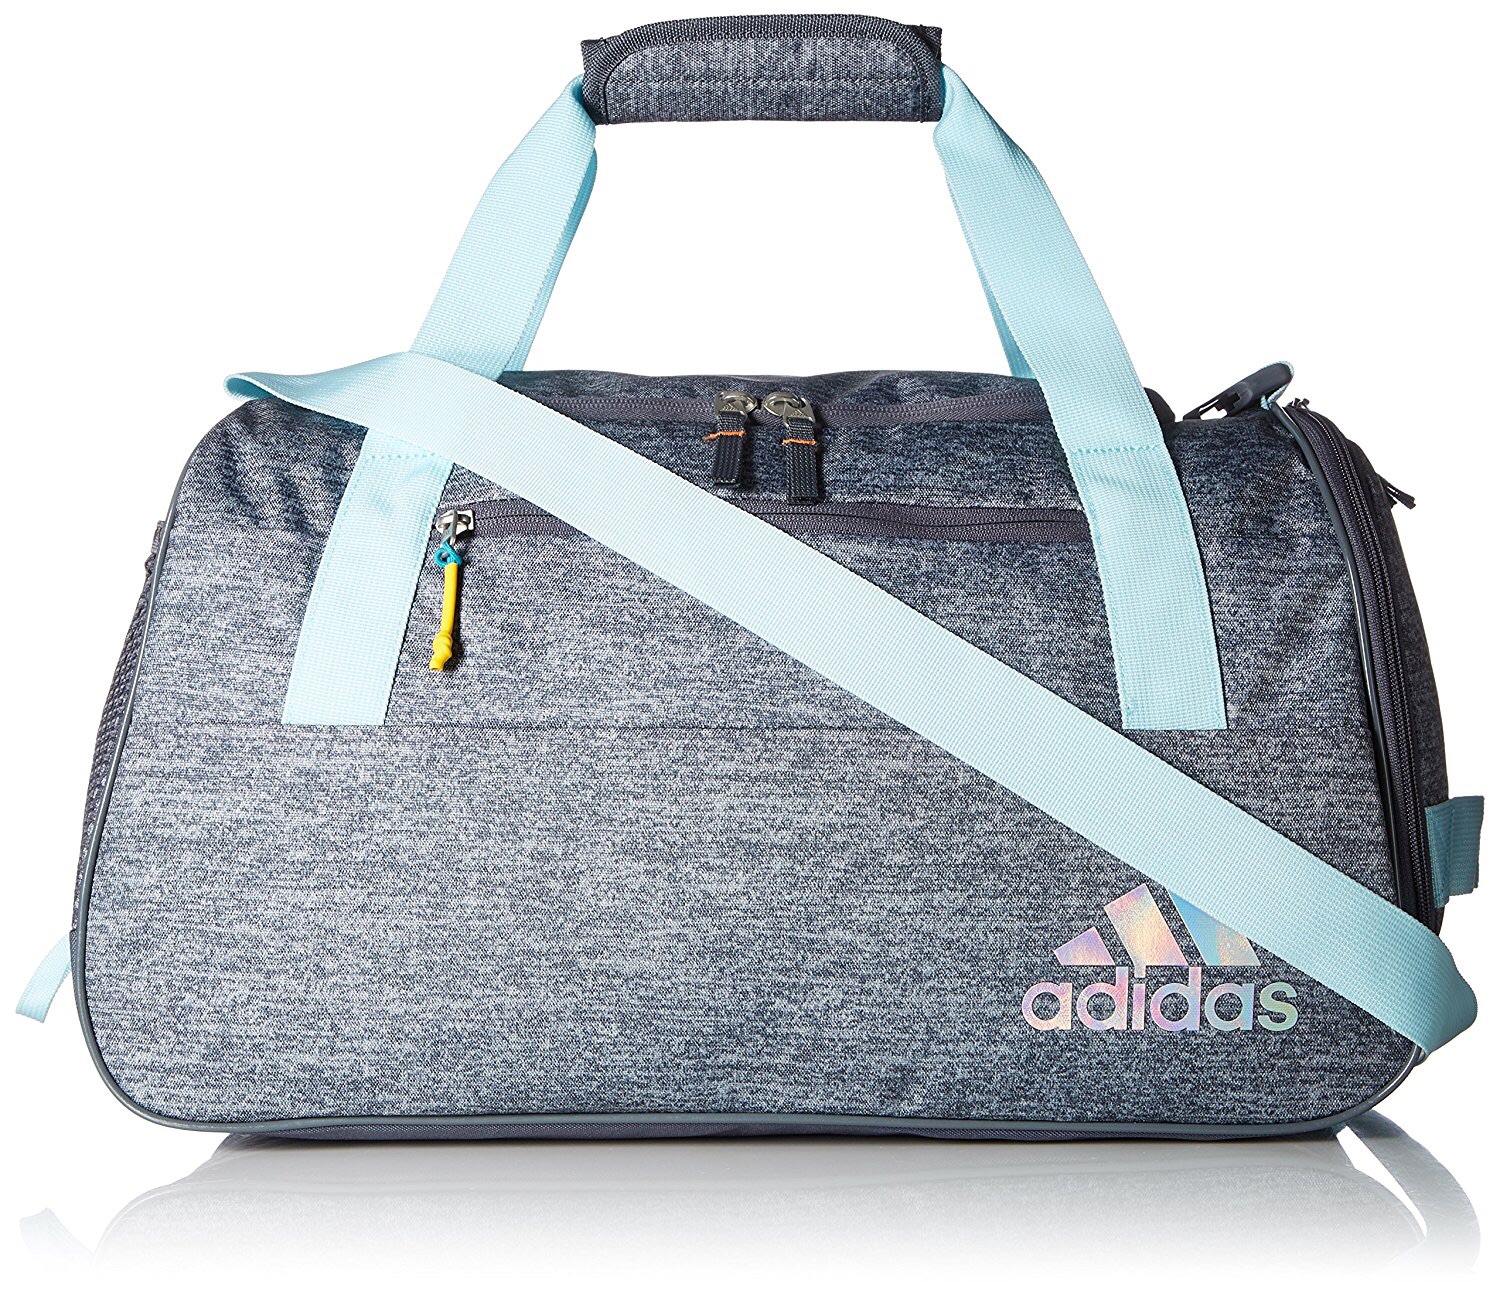 Adidas Duffel Bag